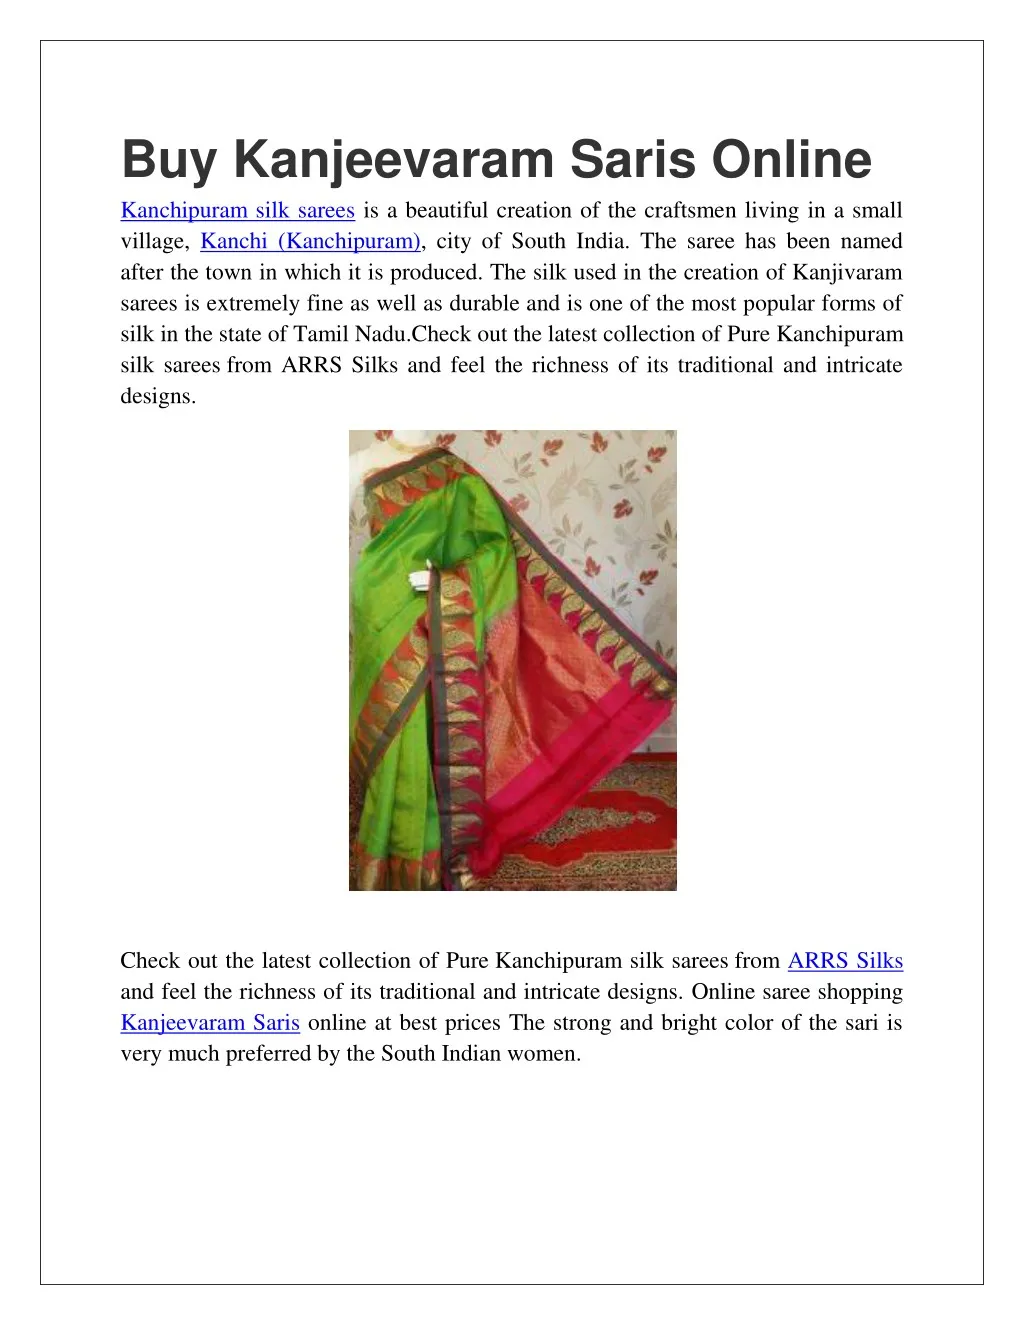 buy kanjeevaram saris online kanchipuram silk